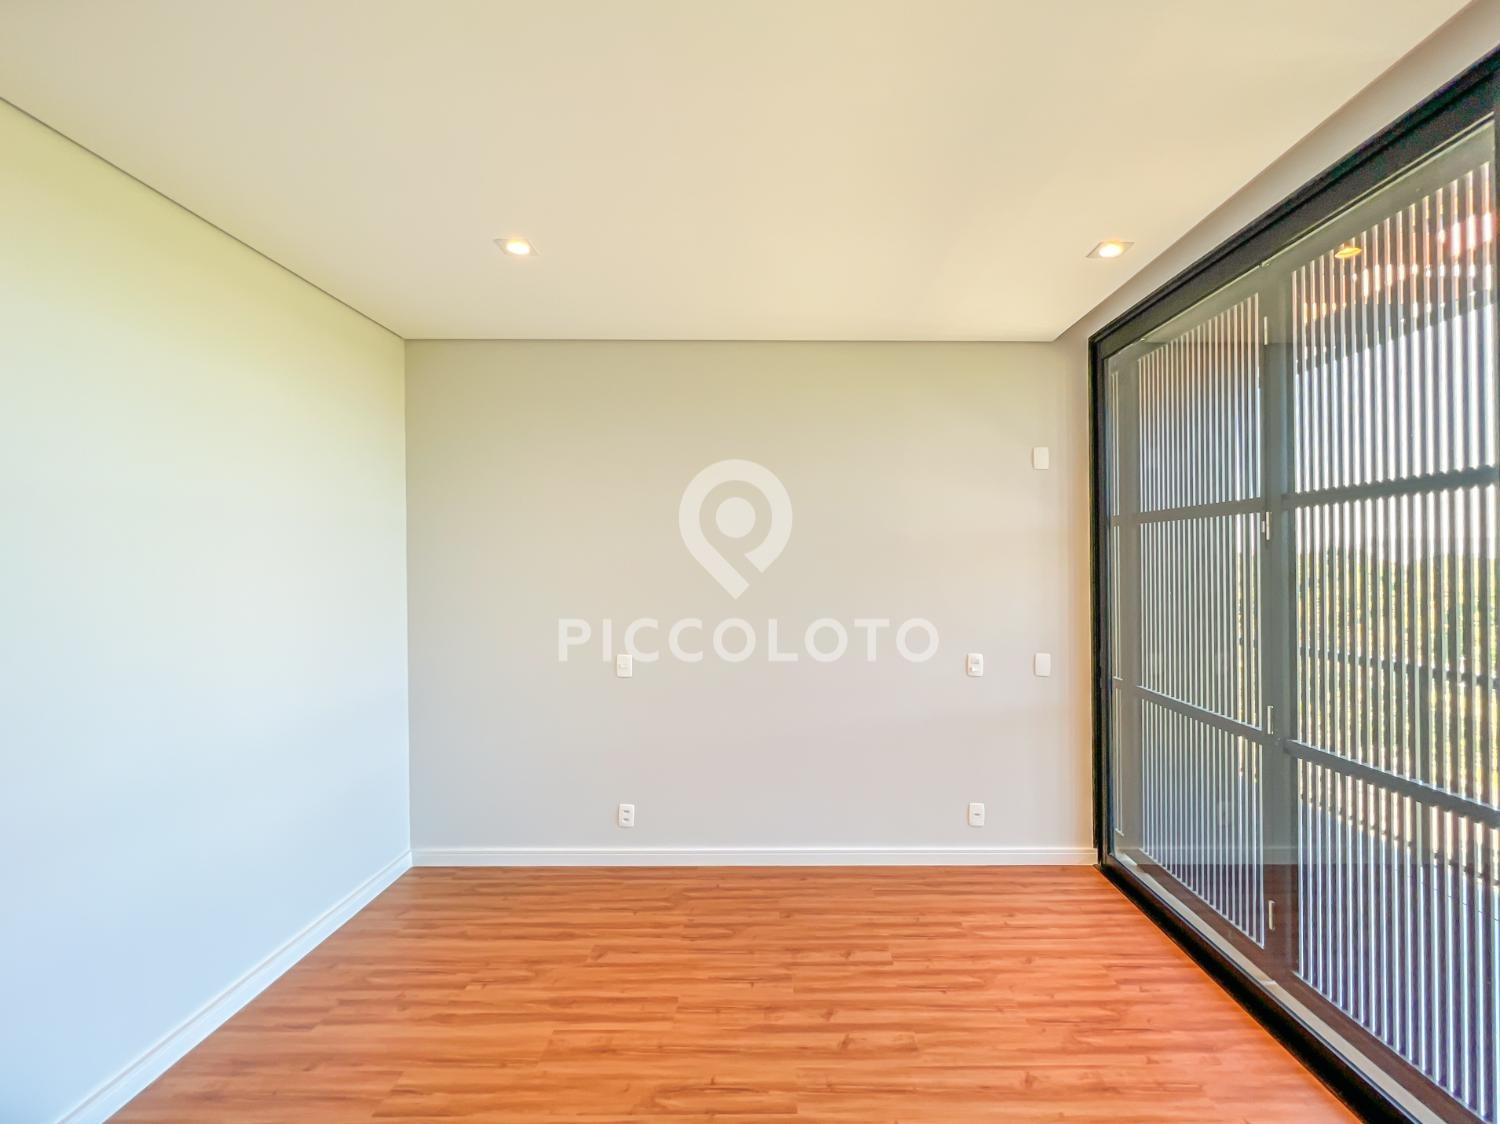 Piccoloto -Casa à venda no Itupeva em Itupeva